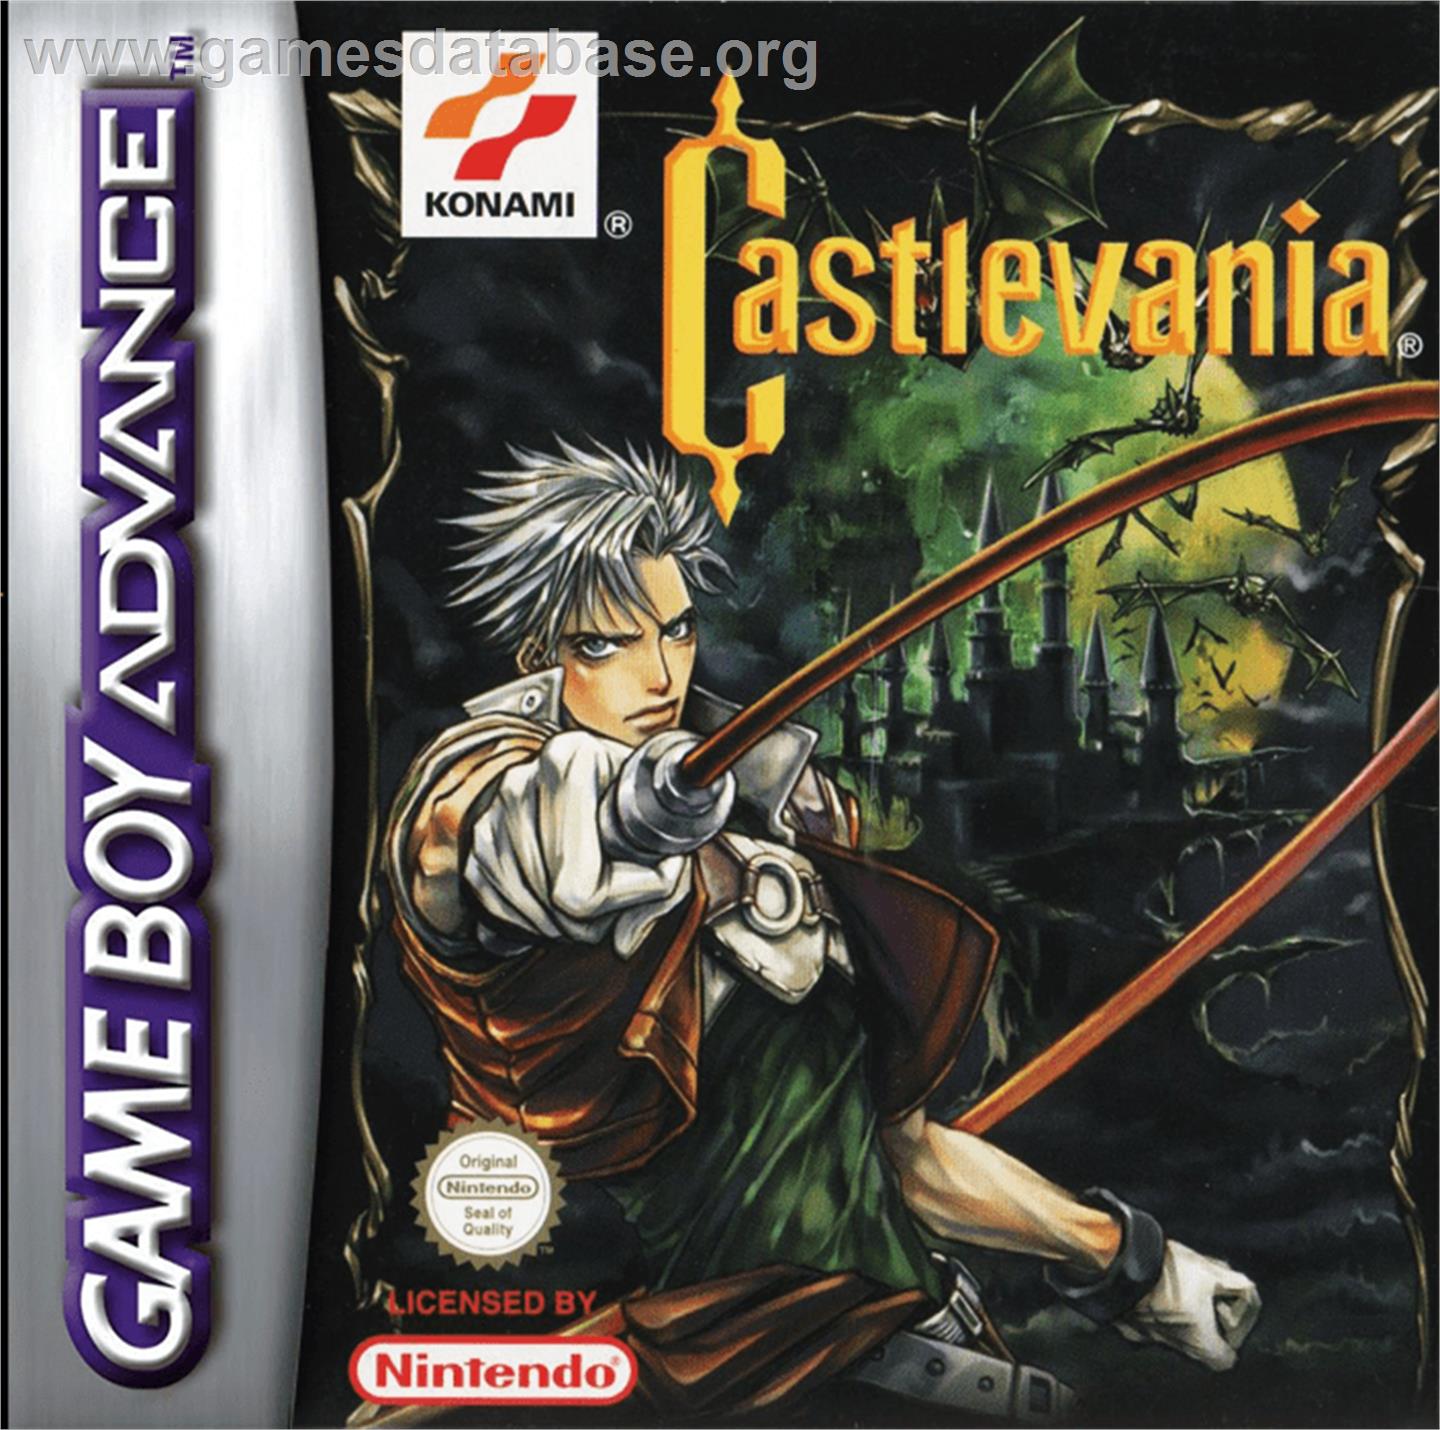 Castlevania: Legends - Nintendo Game Boy - Artwork - Box